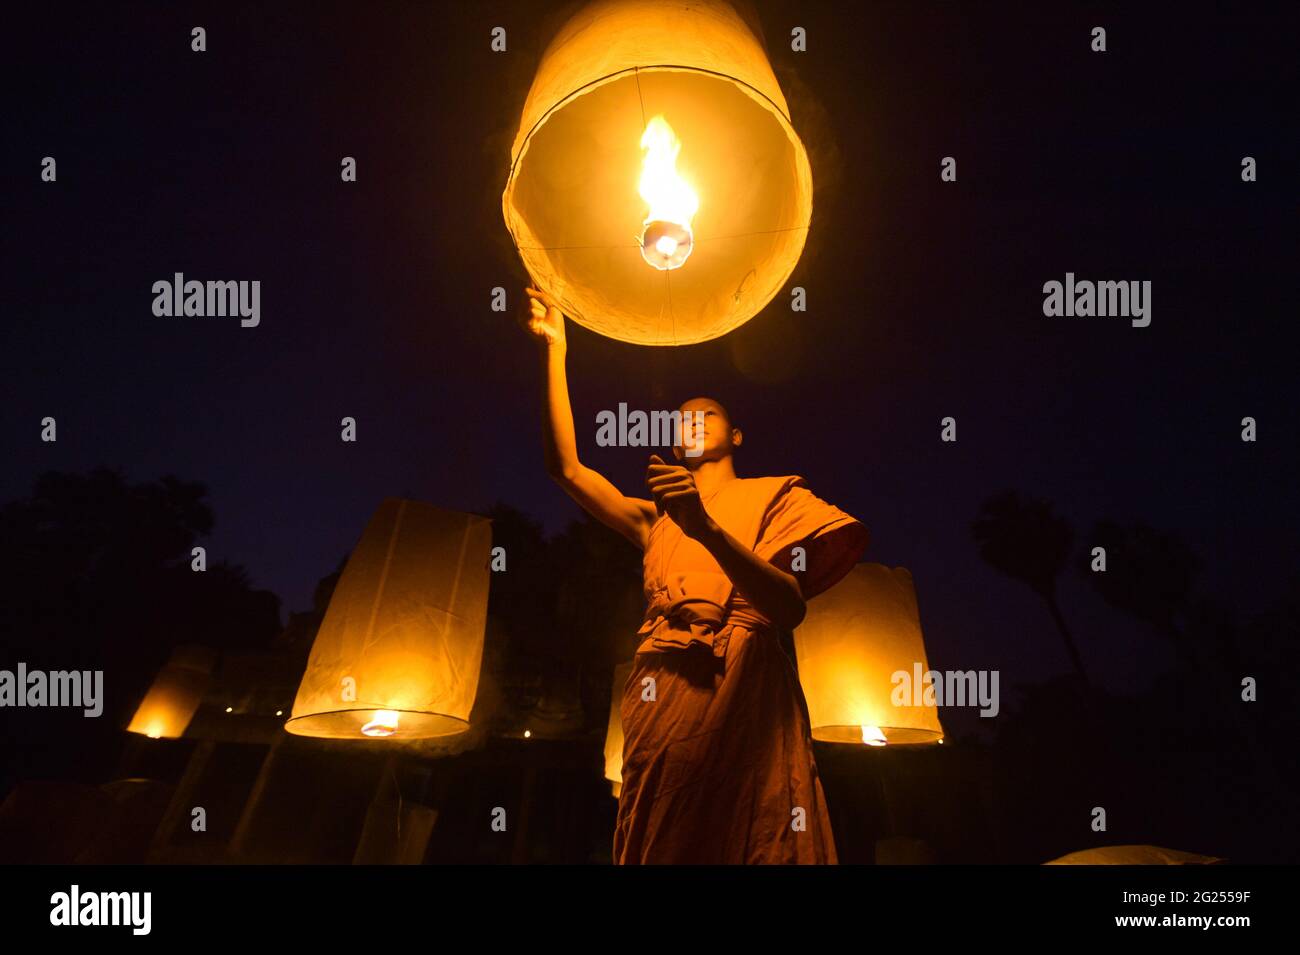 Monk bouddhiste libérant des lanternes dans le ciel la nuit, Thaïlande Banque D'Images